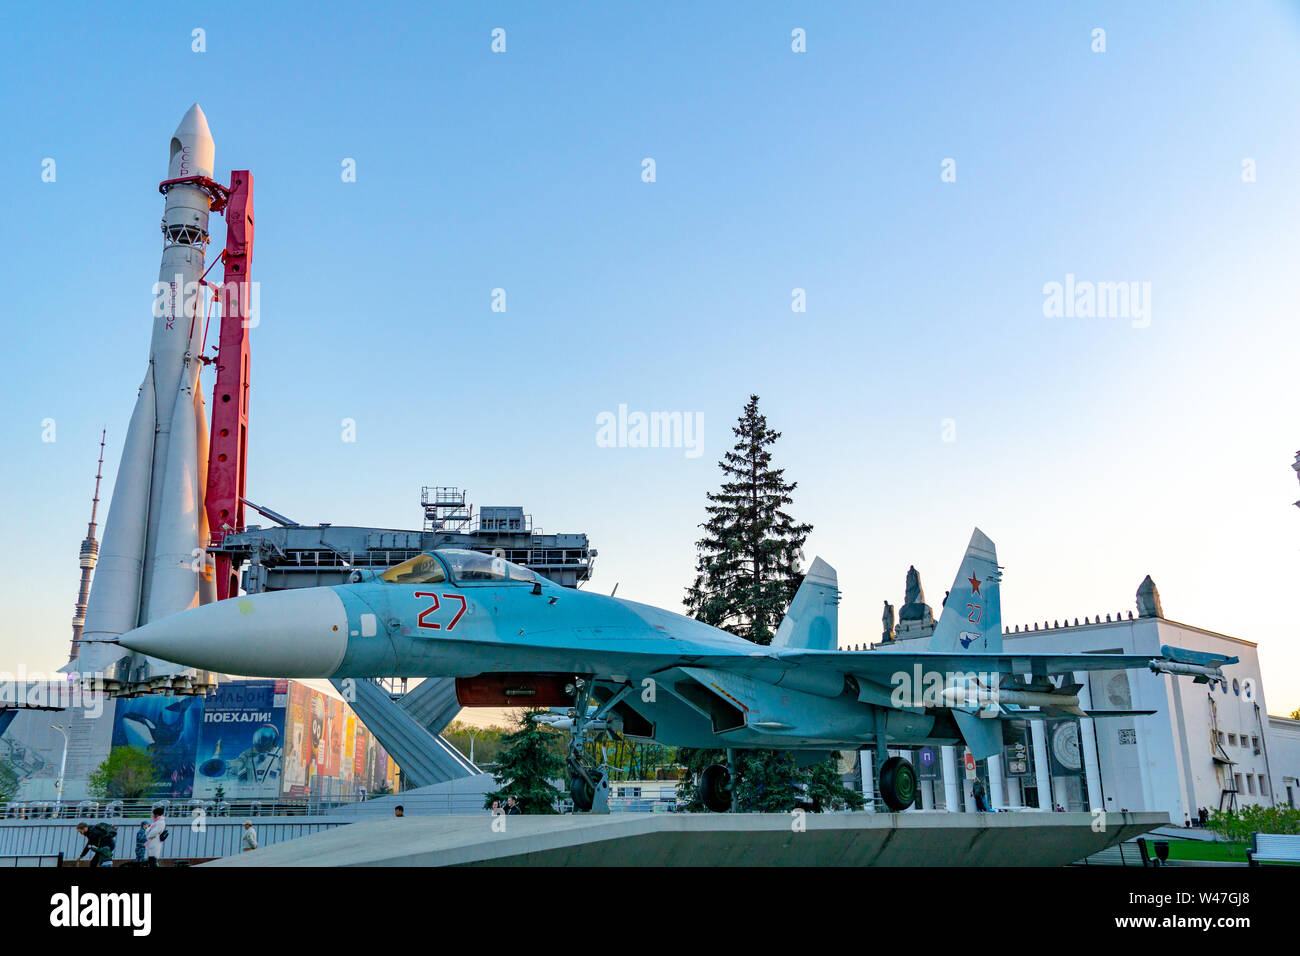 Moscú, Rusia, 30 de abril de 2019: La caza Su-27 y el cohete Vostok en el Cosmos en el pabellón All-Russian Exhibition Center de Moscú, V Foto de stock